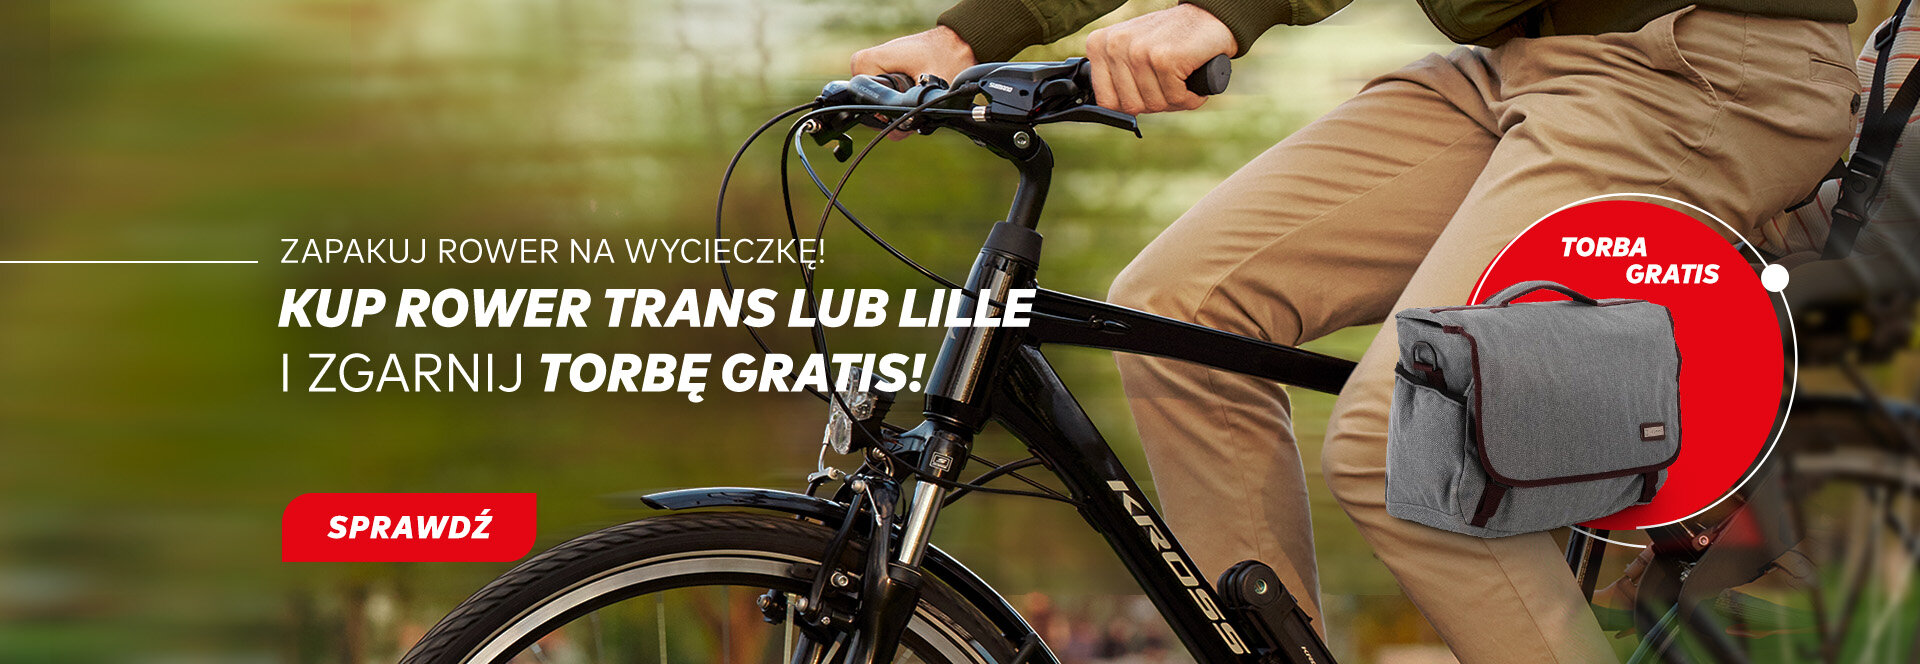 Kup wybrany rower Trans lub Lille  i odbierz Torbę rowerową gratis >>